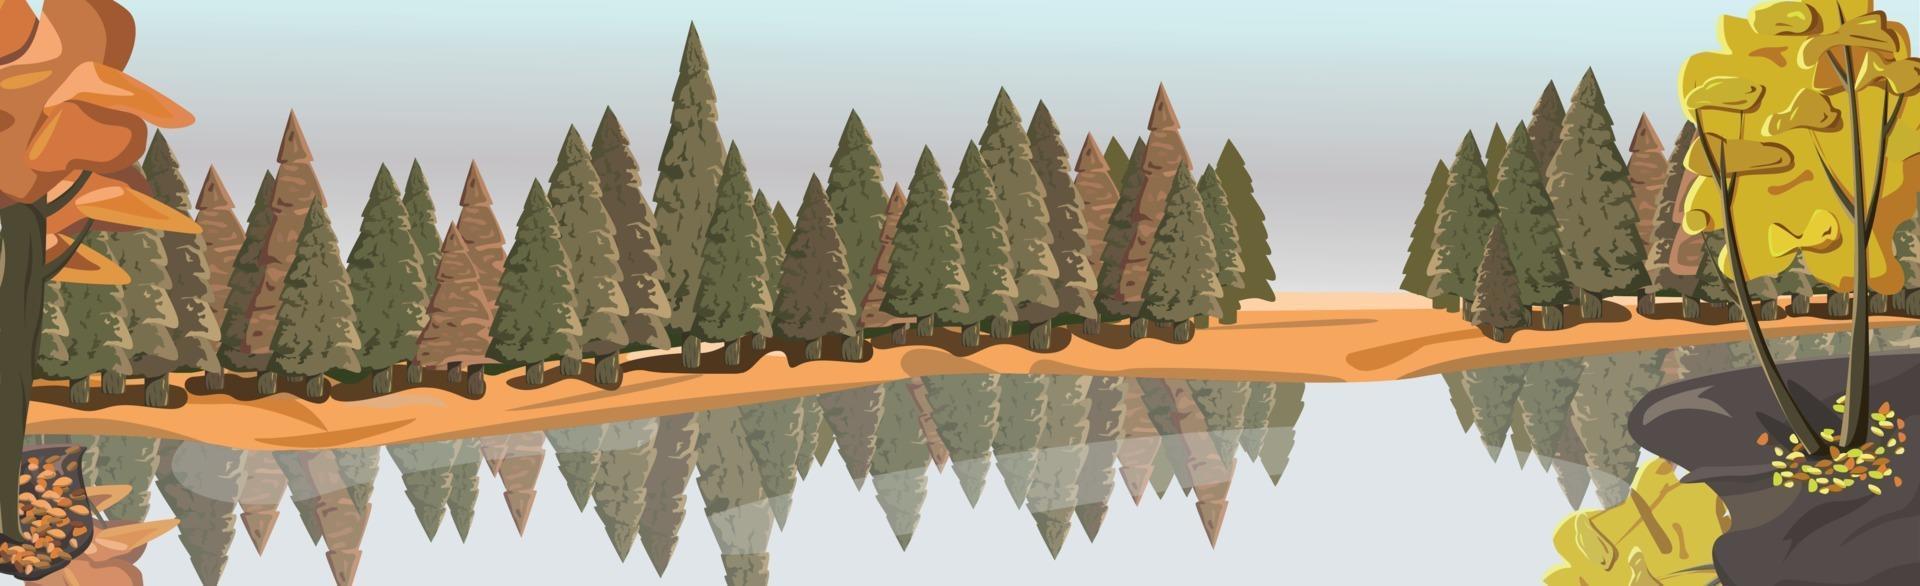 realistischer Mischwald spiegelt sich im Fluss - Vektor